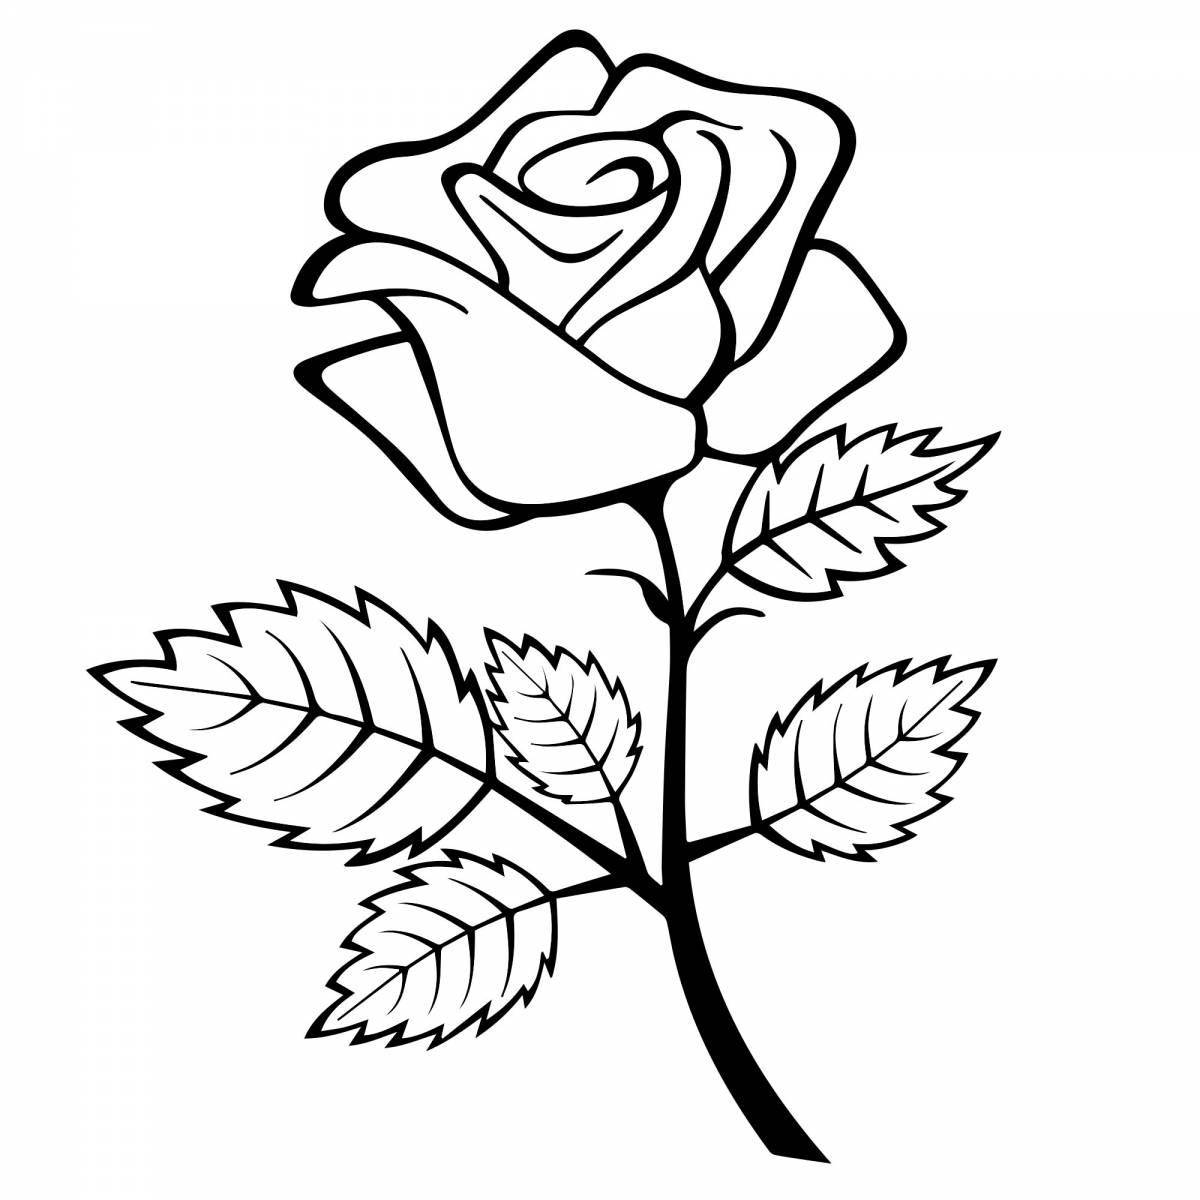 Coloring page elegant rose